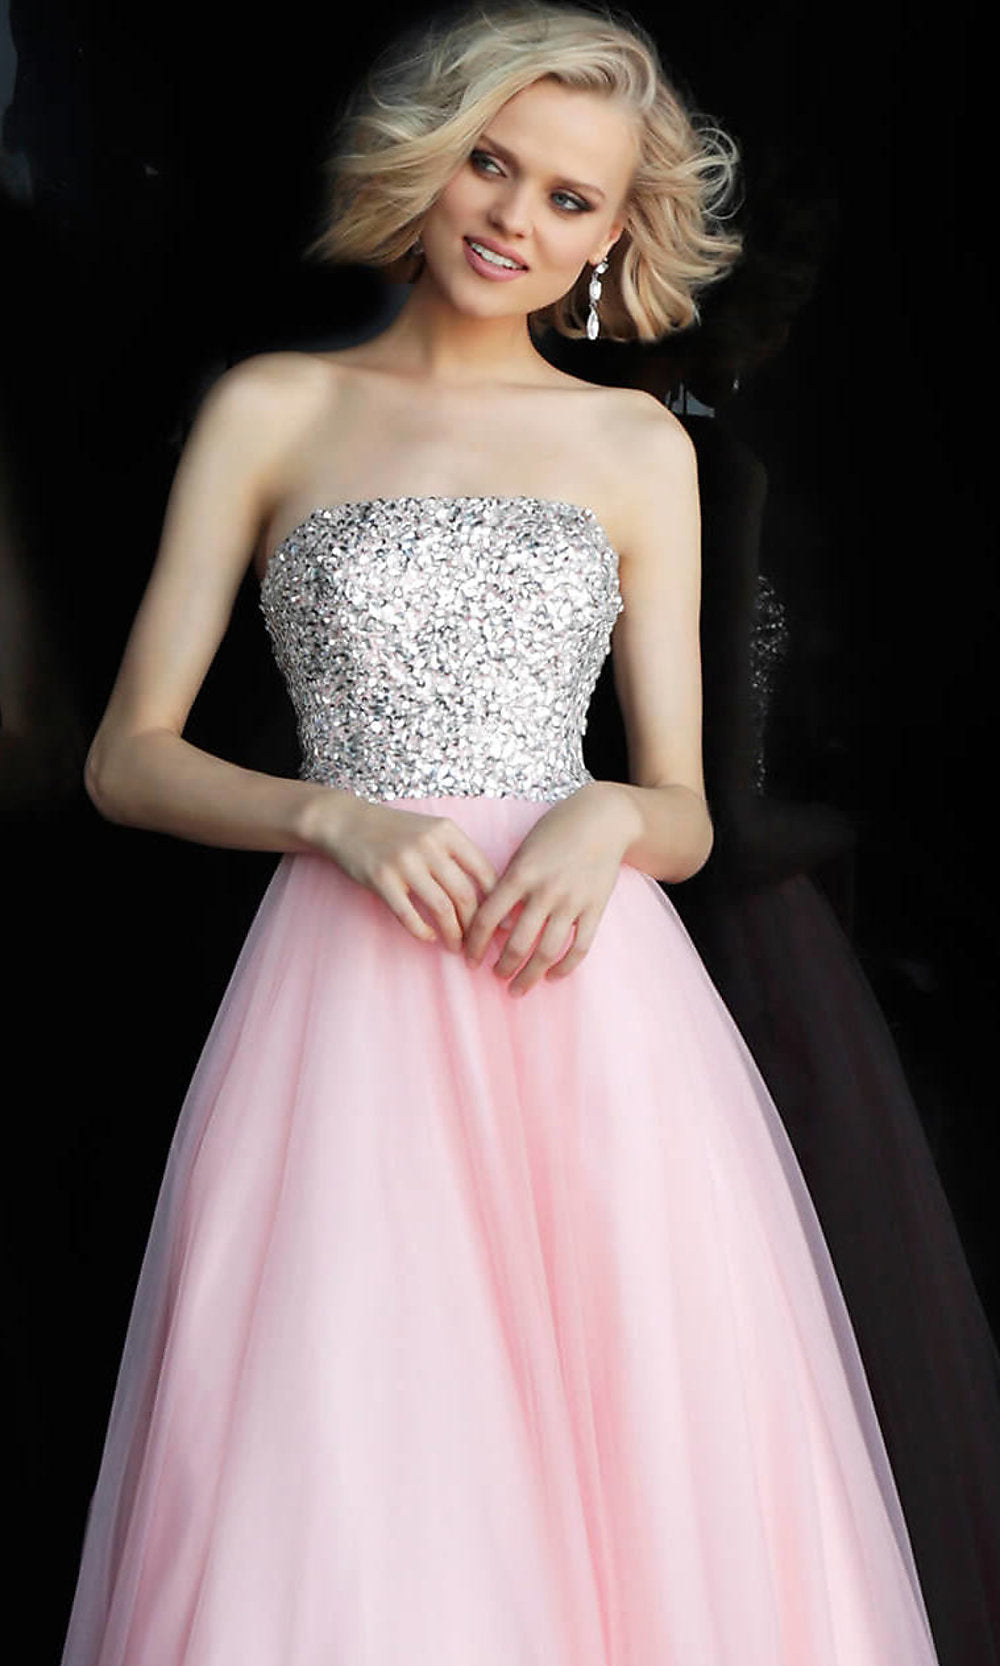  Long JVN by Jovani Strapless Blush Pink Prom Dress